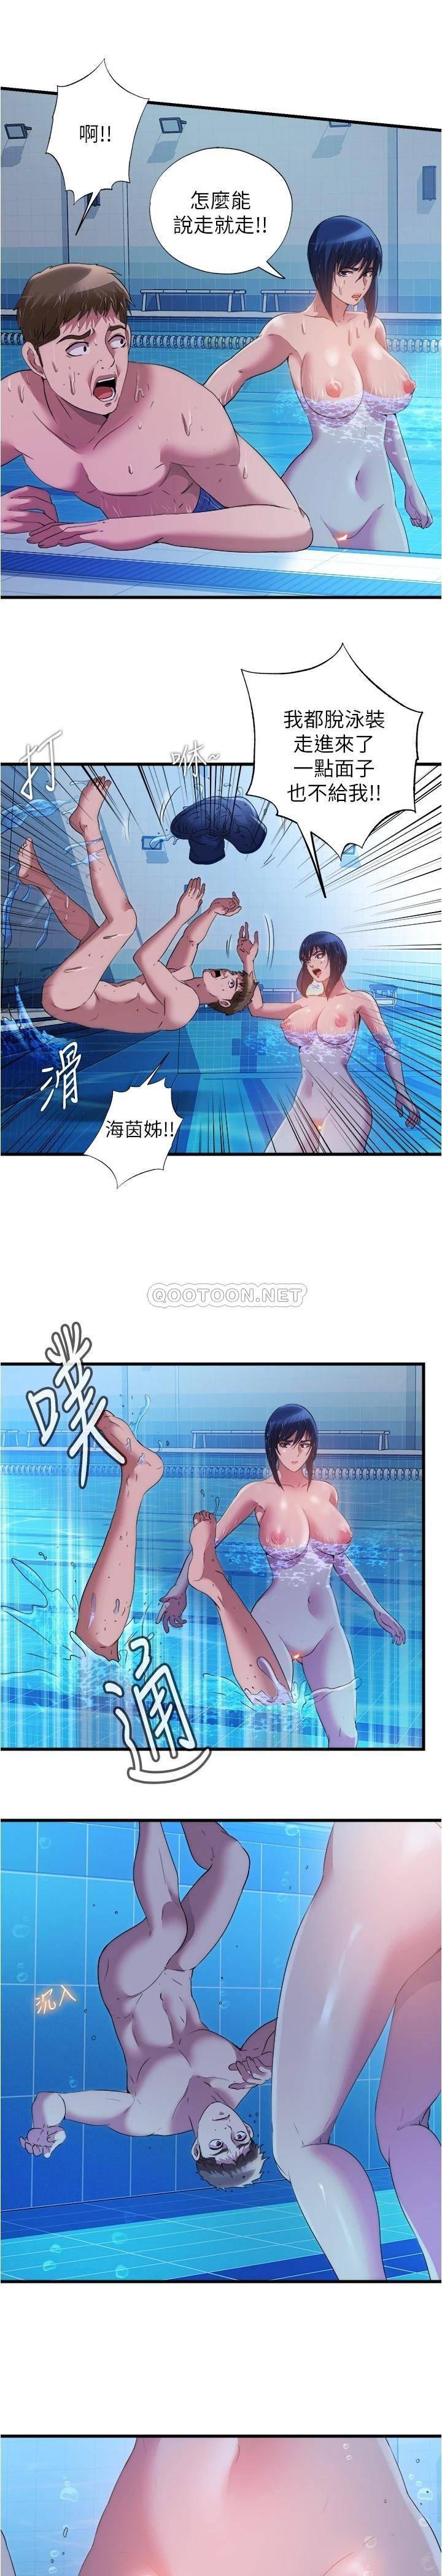 韩国污漫画 滿溢遊泳池 第78话在水里享受海茵姐的鲍鱼 7